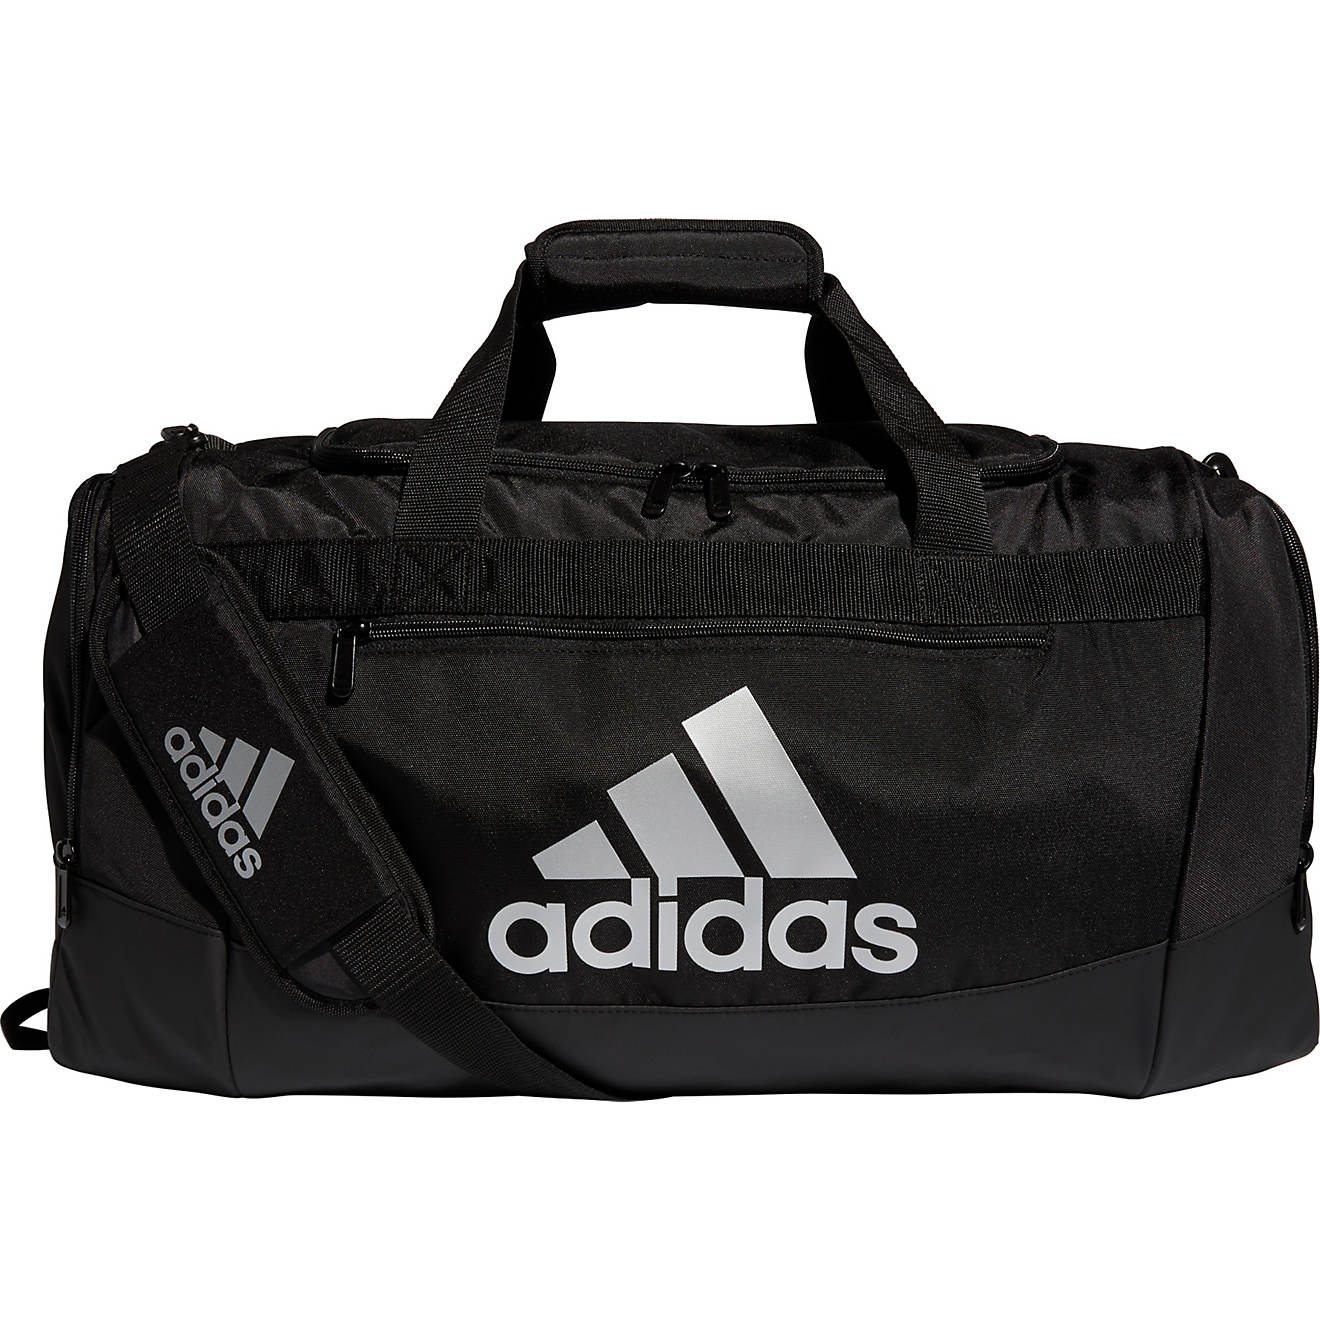 adidas Defender IV Medium Duffel Bag                                                                                             - view number 1